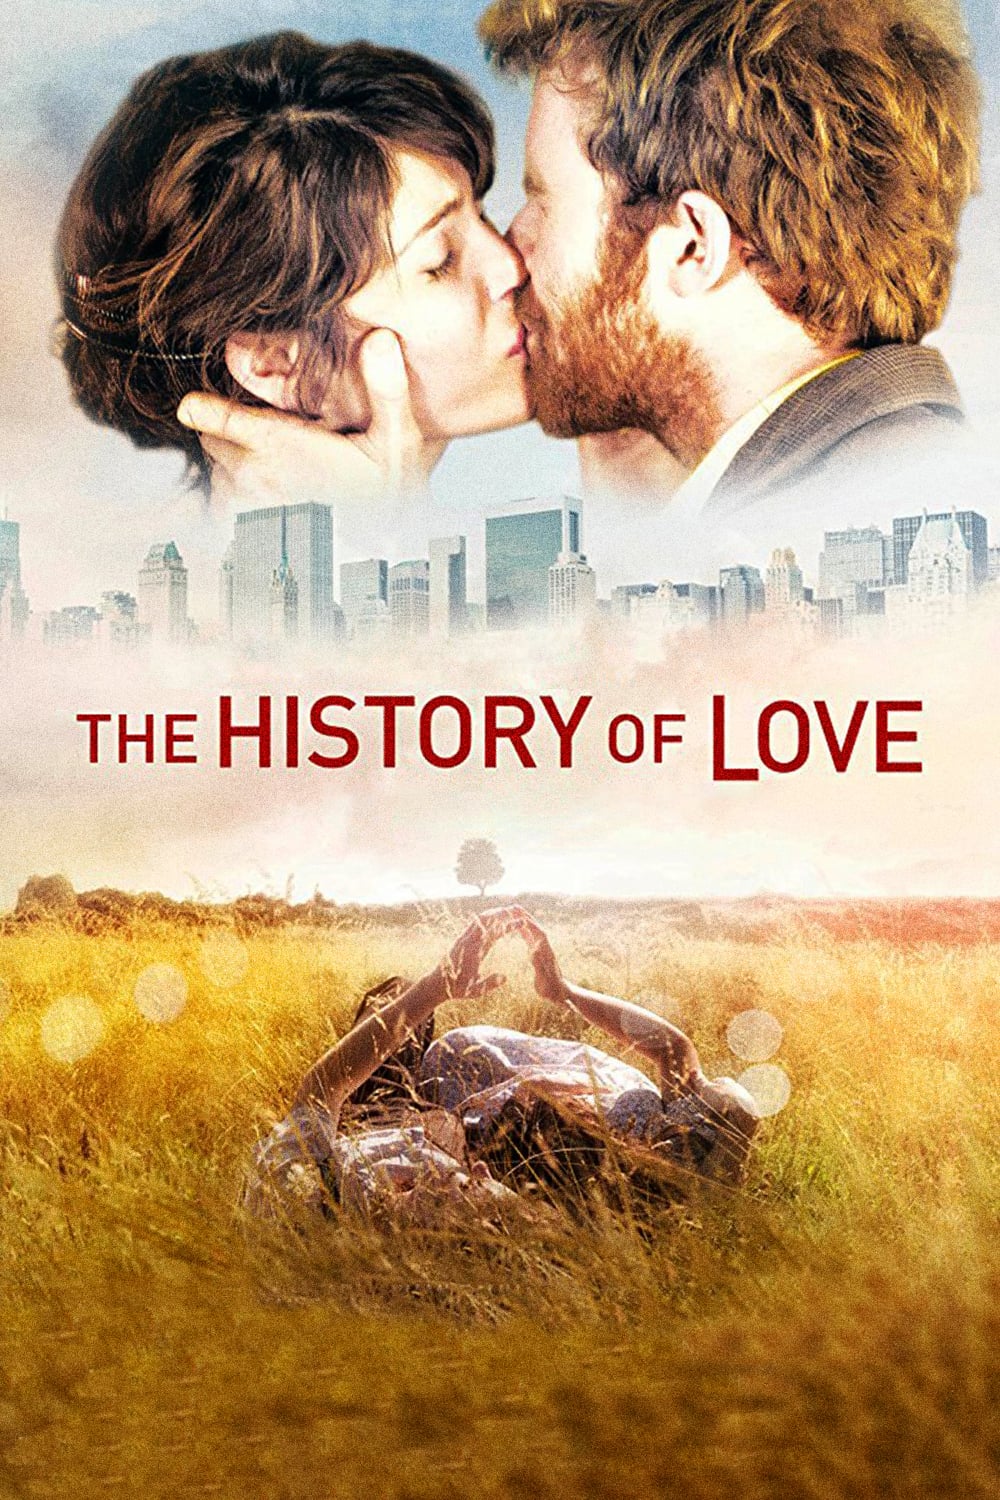 La historia del amor